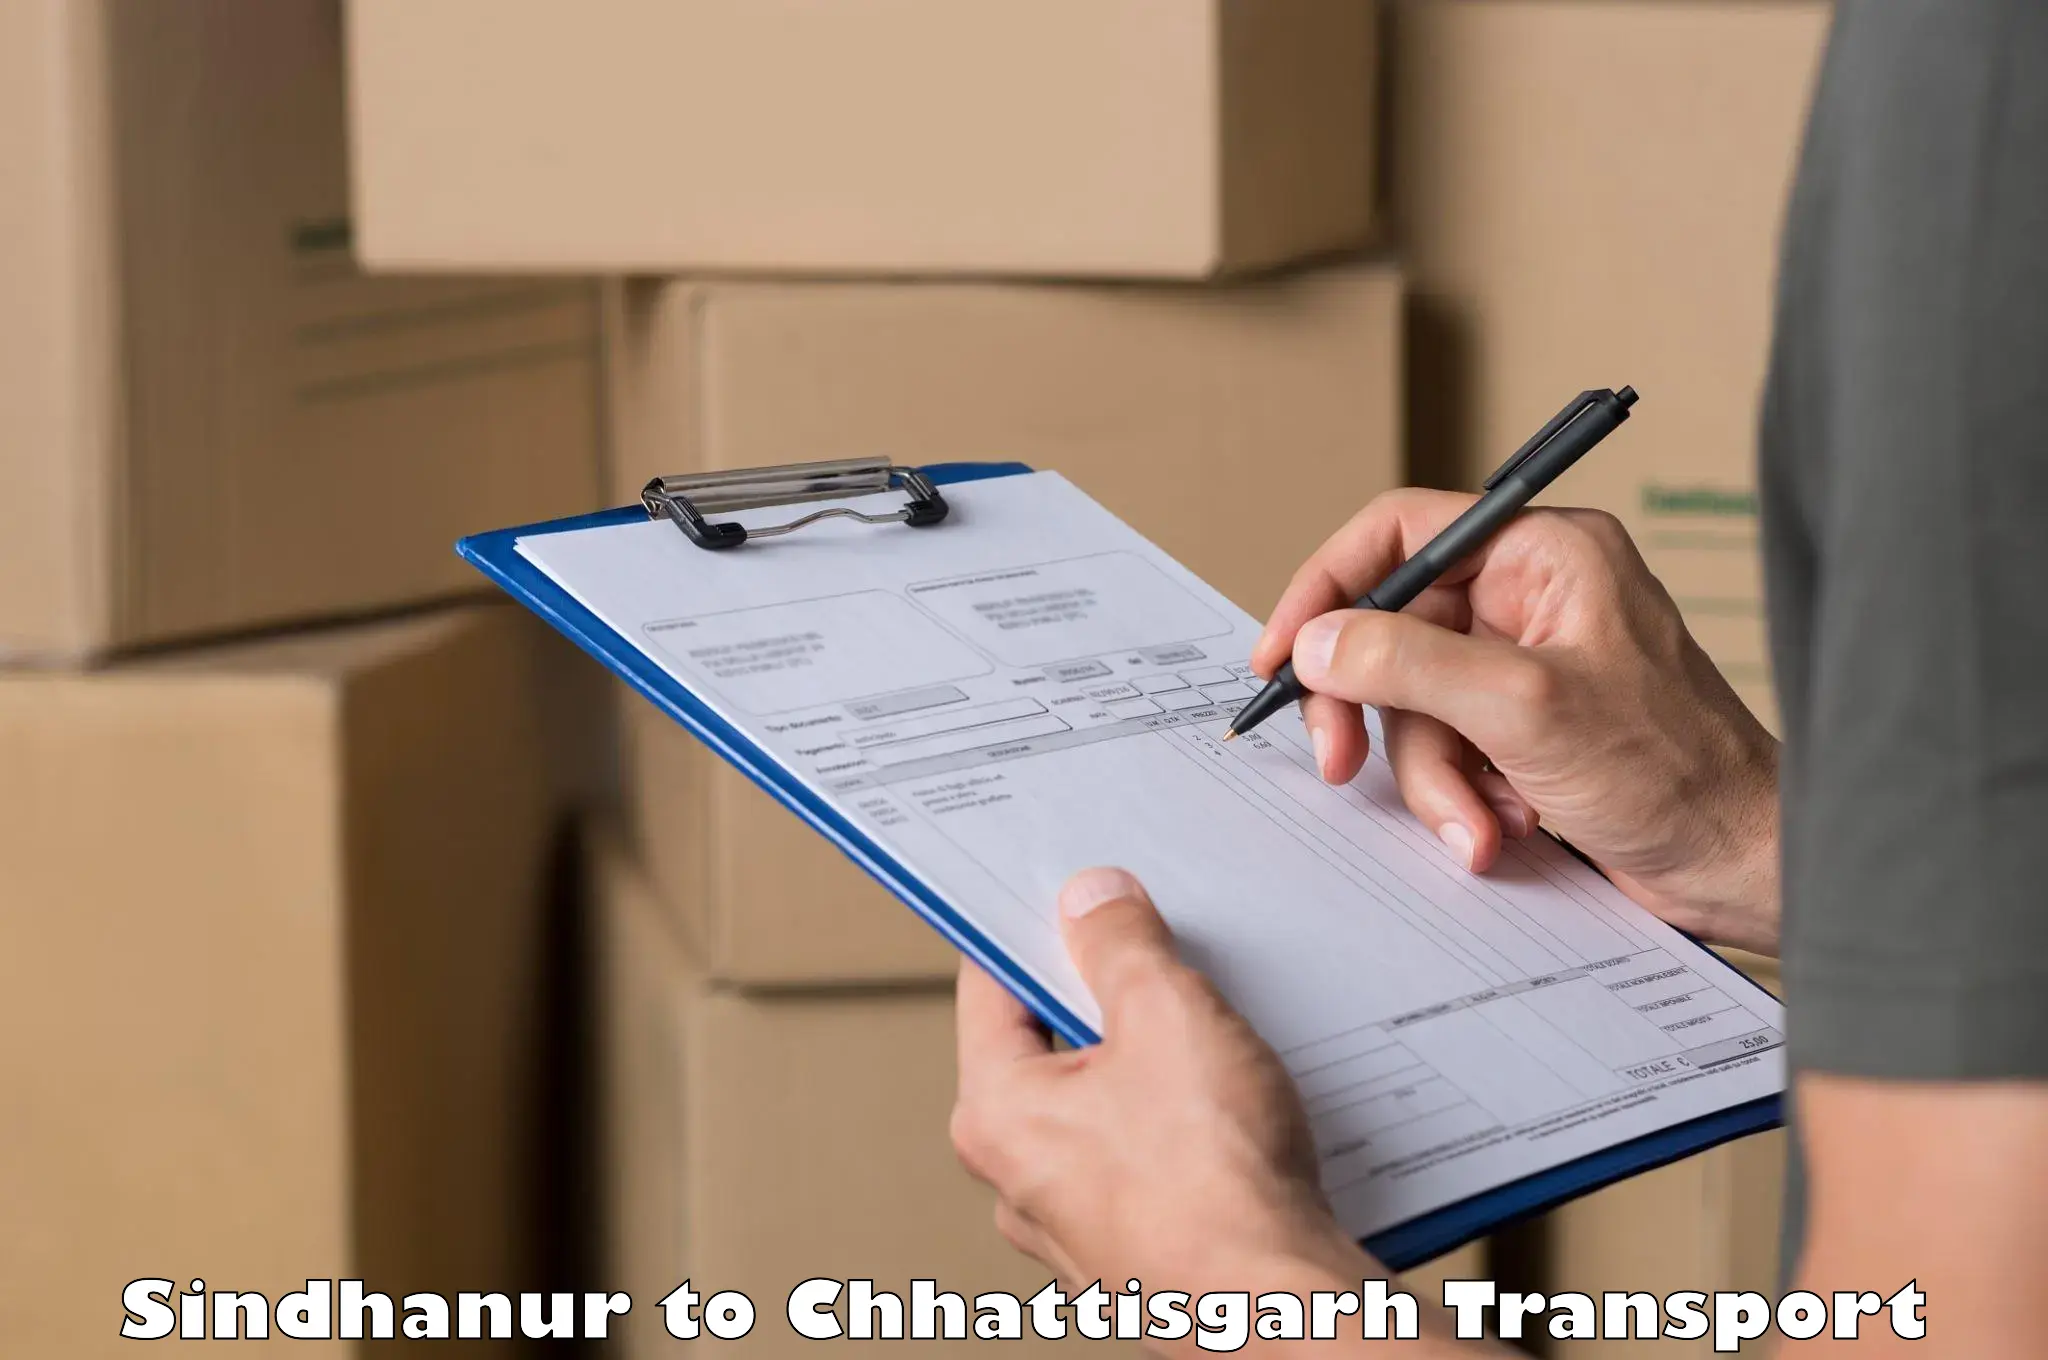 Express transport services Sindhanur to Chhattisgarh